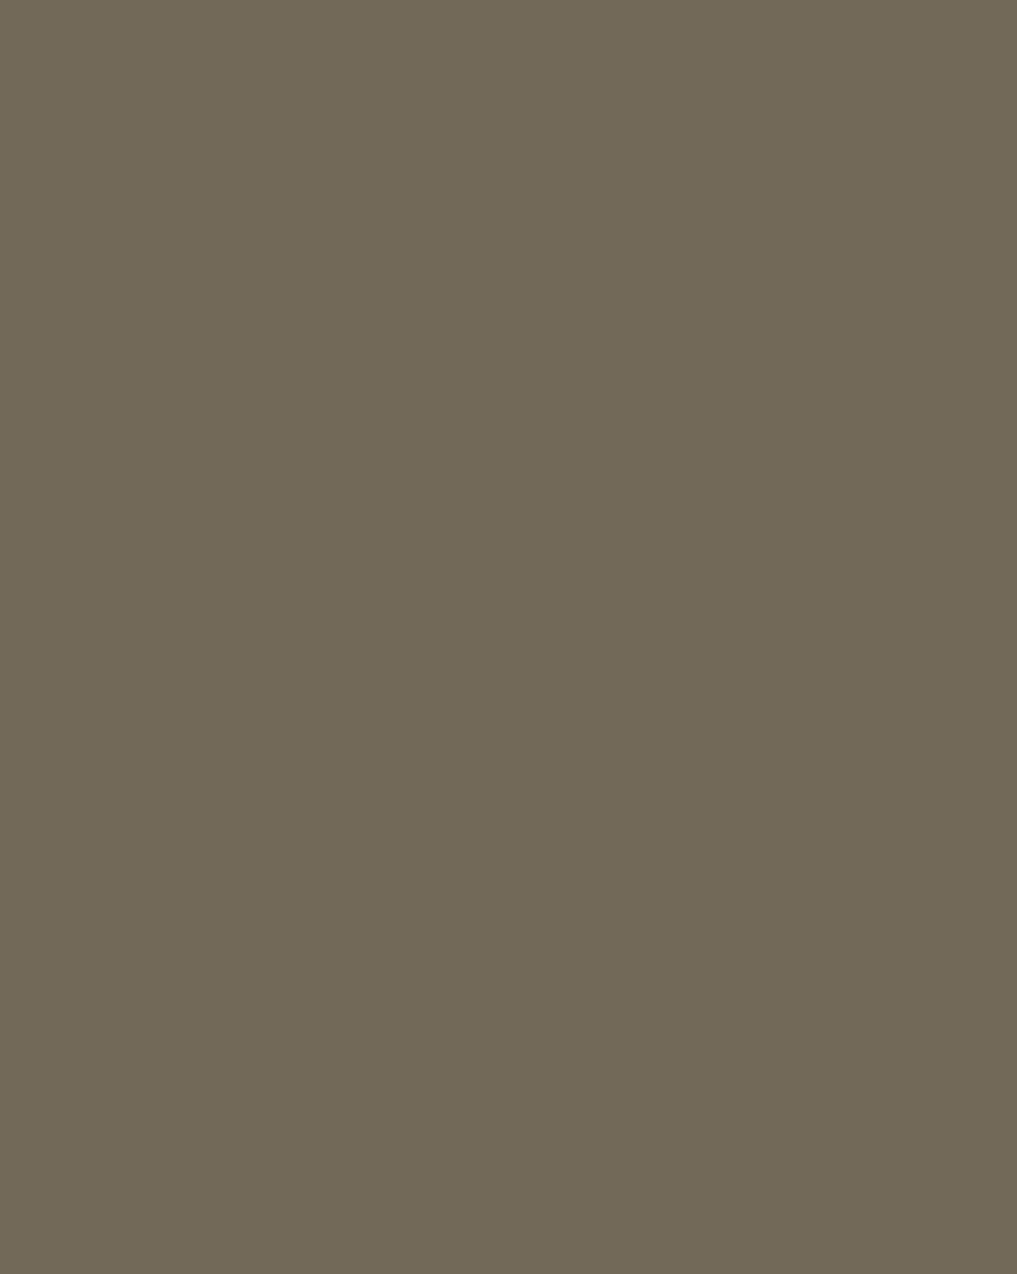 Иван Крамской. Портрет художника Ивана Шишкина (фрагмент). 1880. Государственный Русский музей, Санкт-Петербург